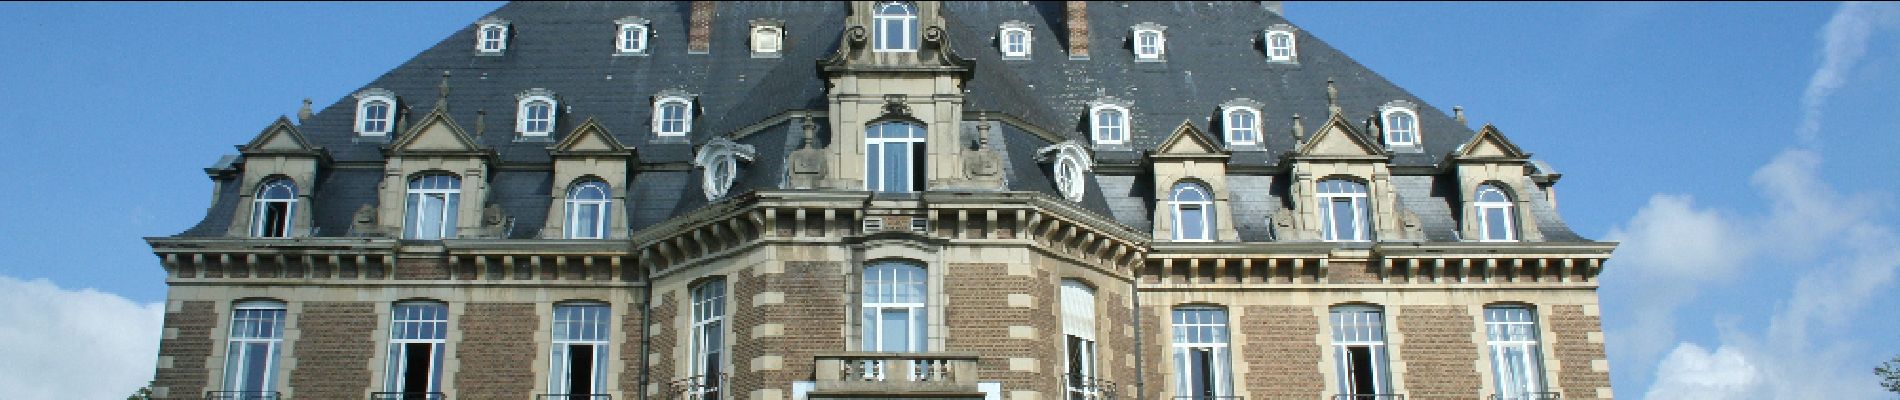 POI Namen - Le château de Namur - Photo